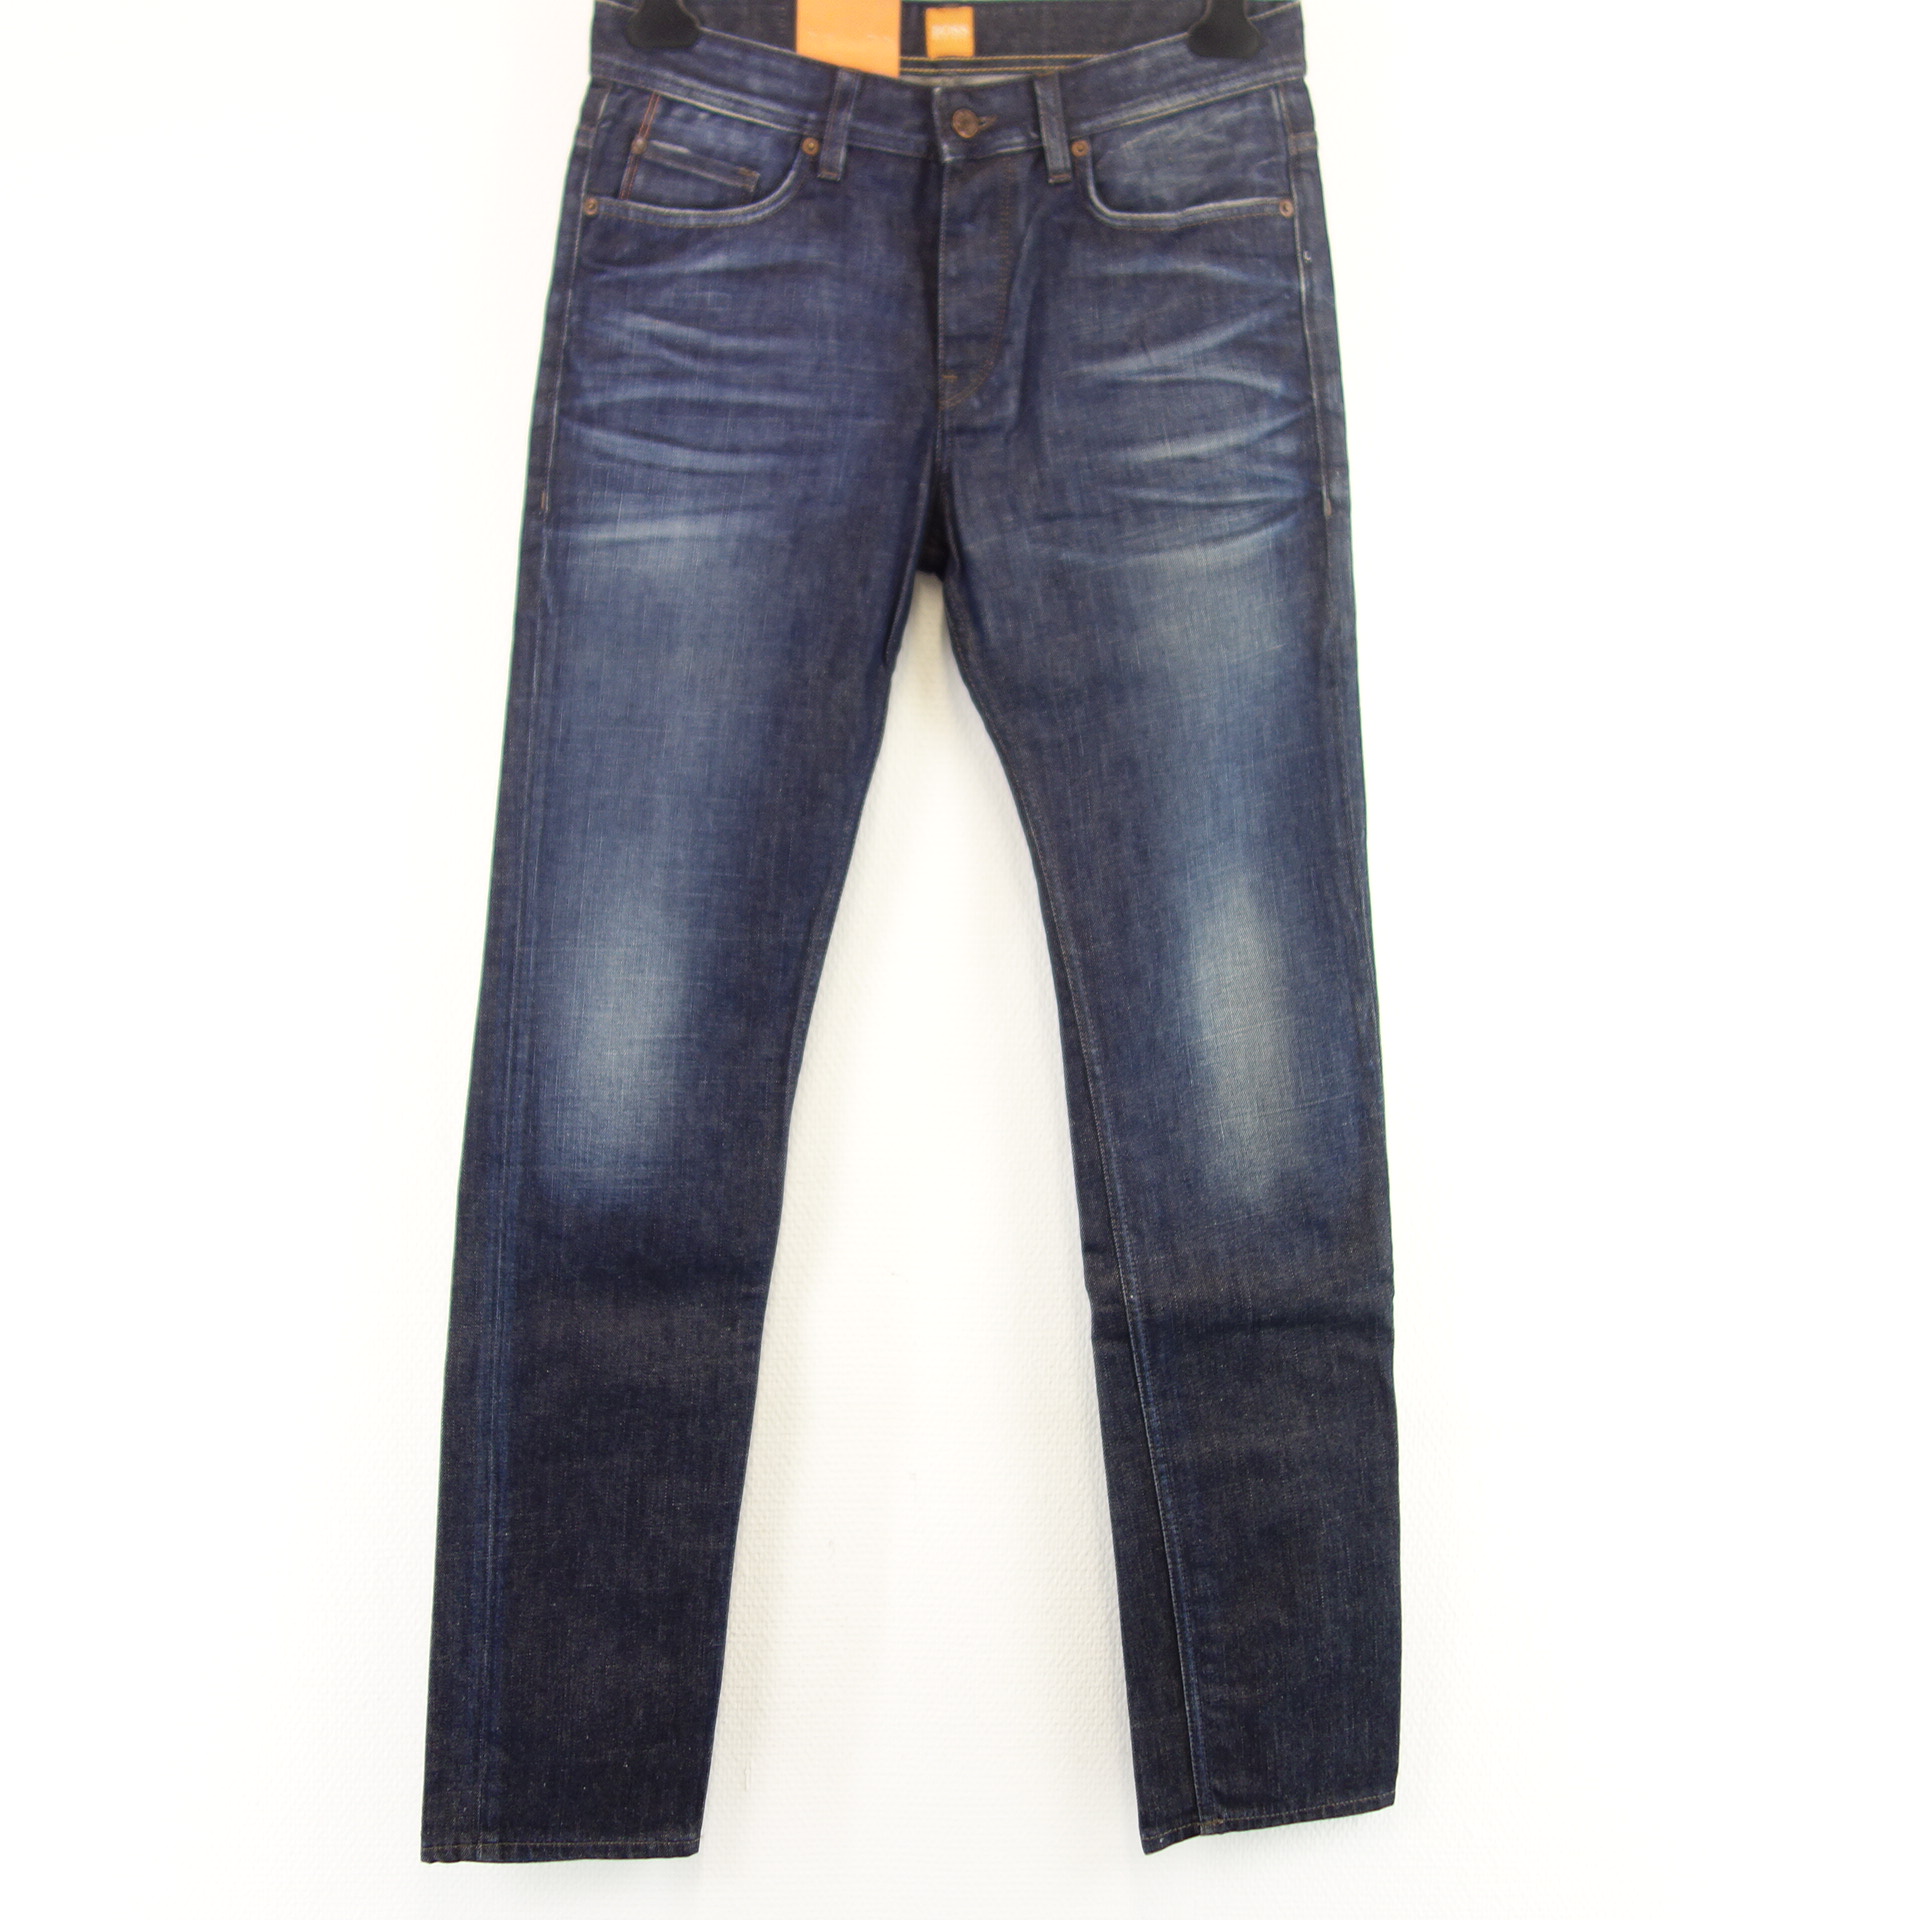 HUGO BOSS Herren Jeans Hose Jeanshose Straight Blau W 31 L 34 Modell BIBA Regular Fit